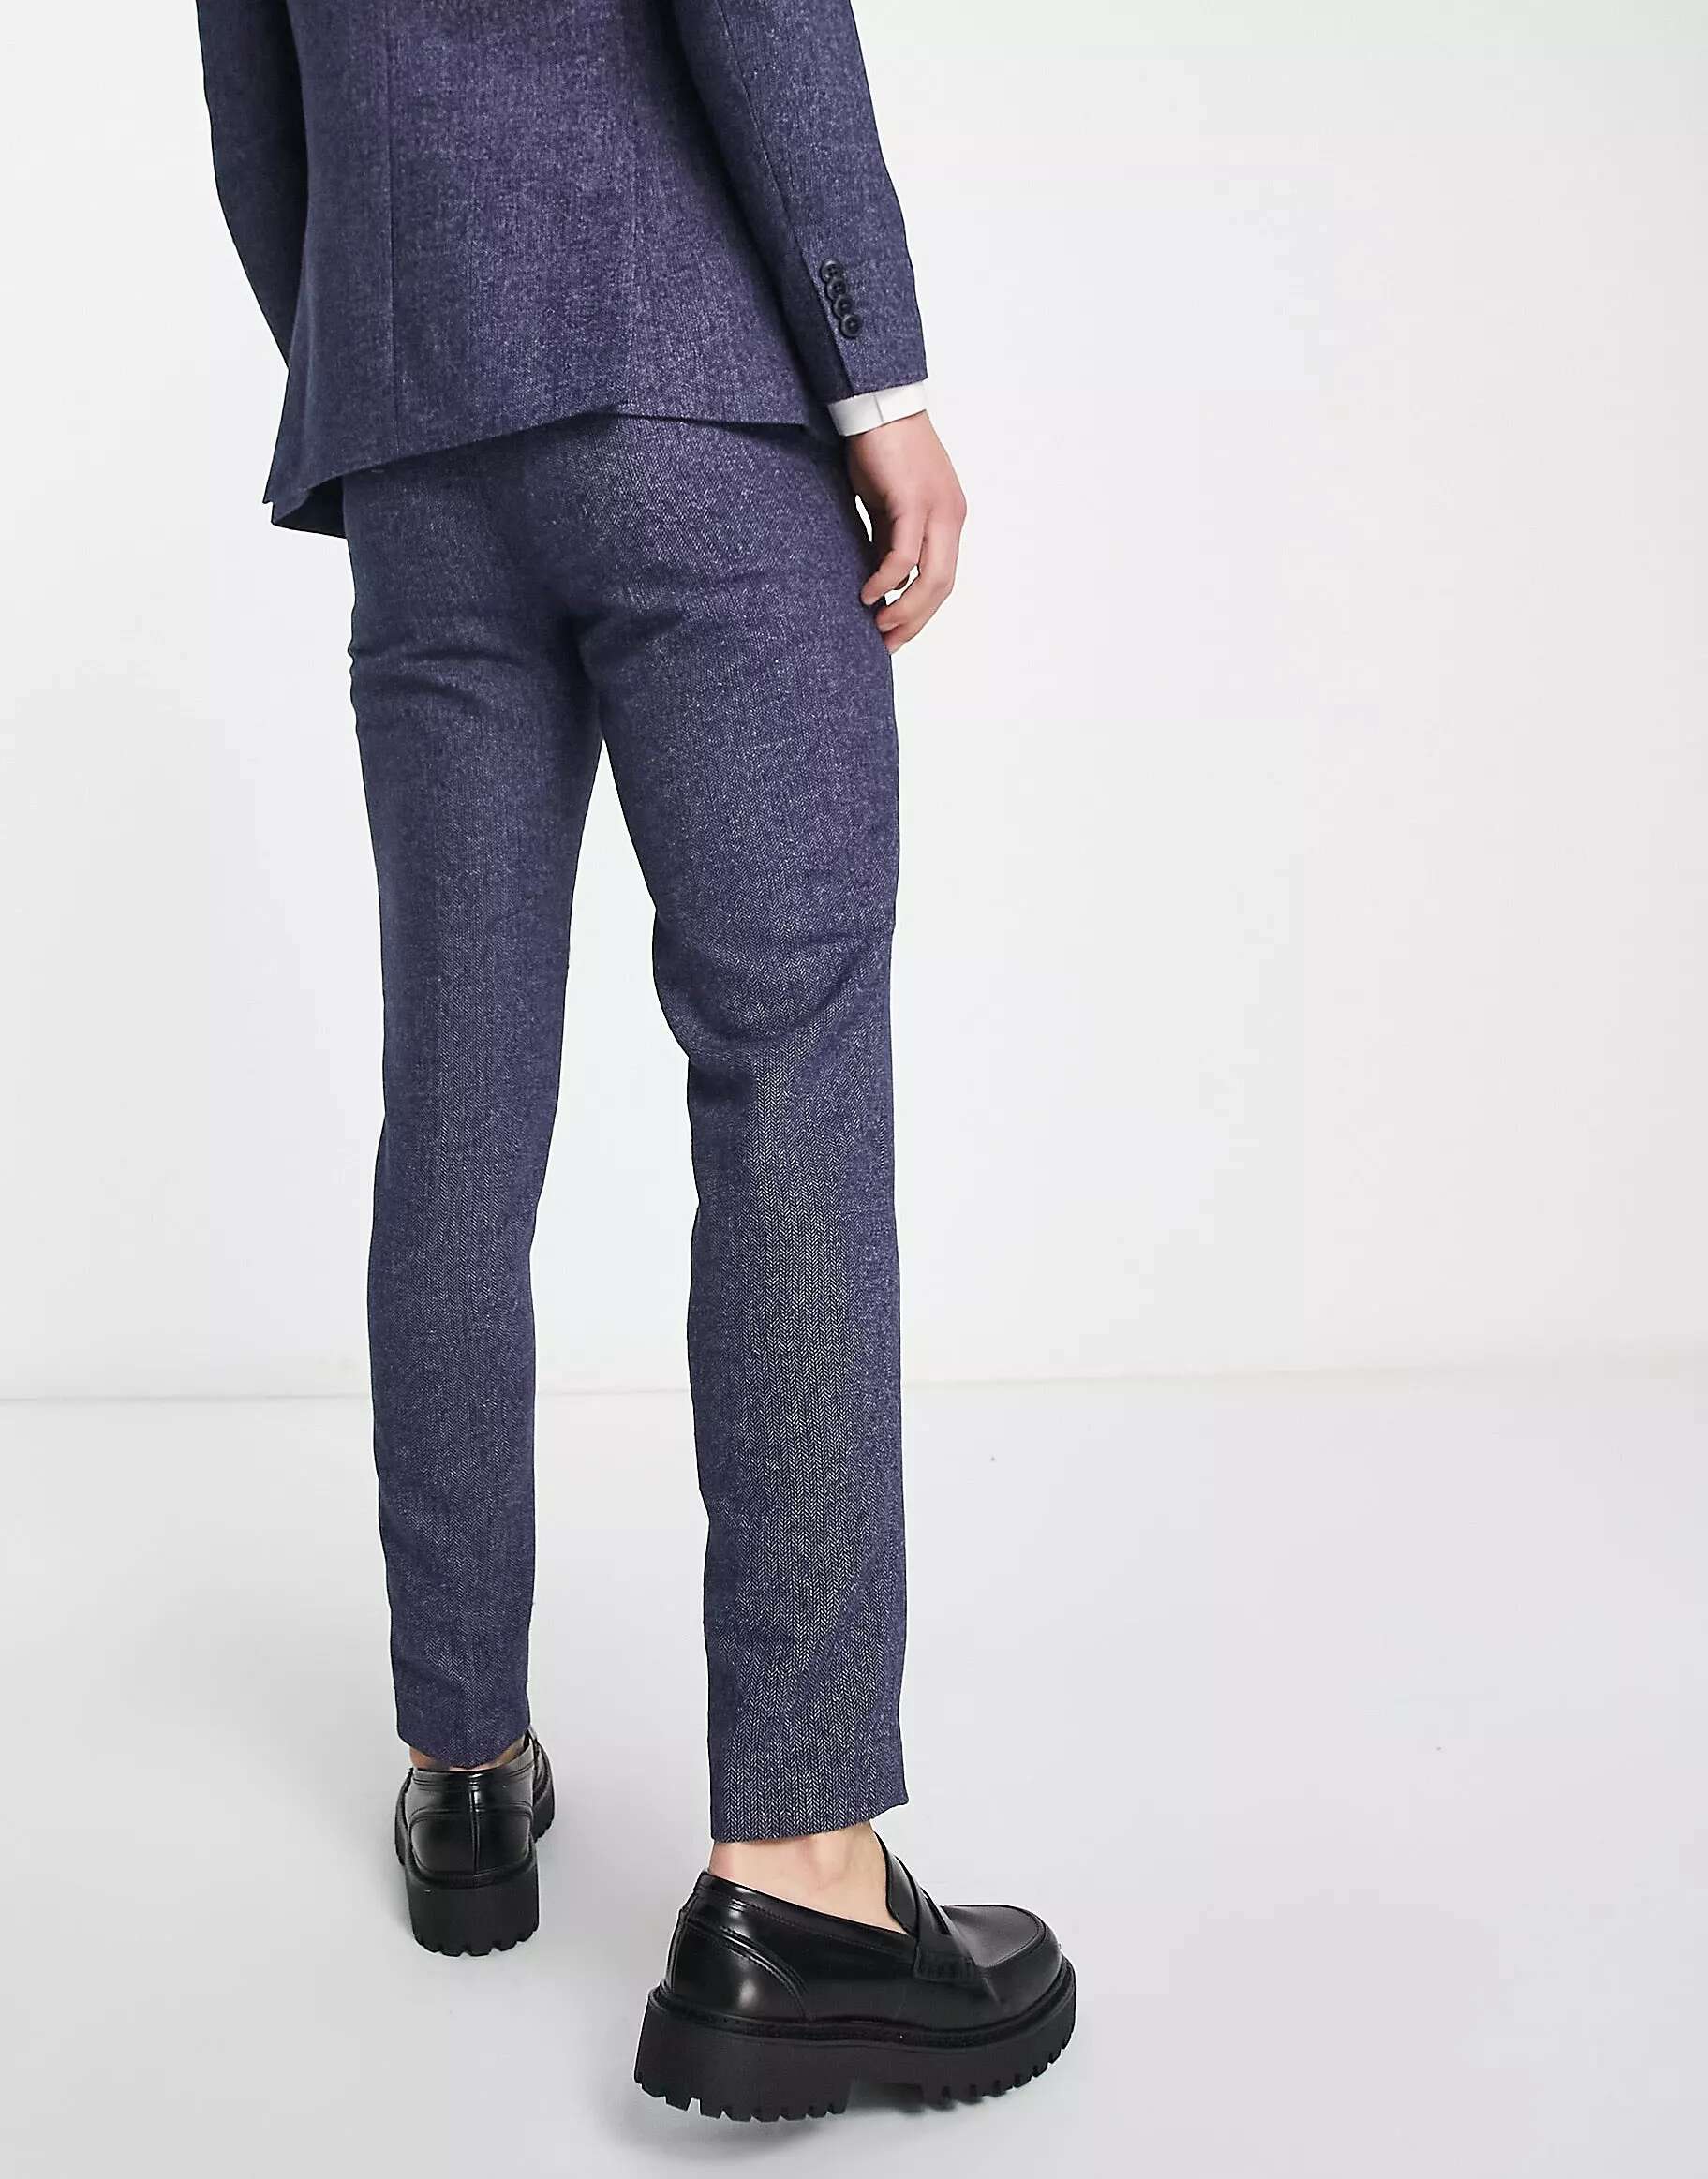 Суперузкие твидовые костюмные брюки Jack & Jones Premium синего цвета